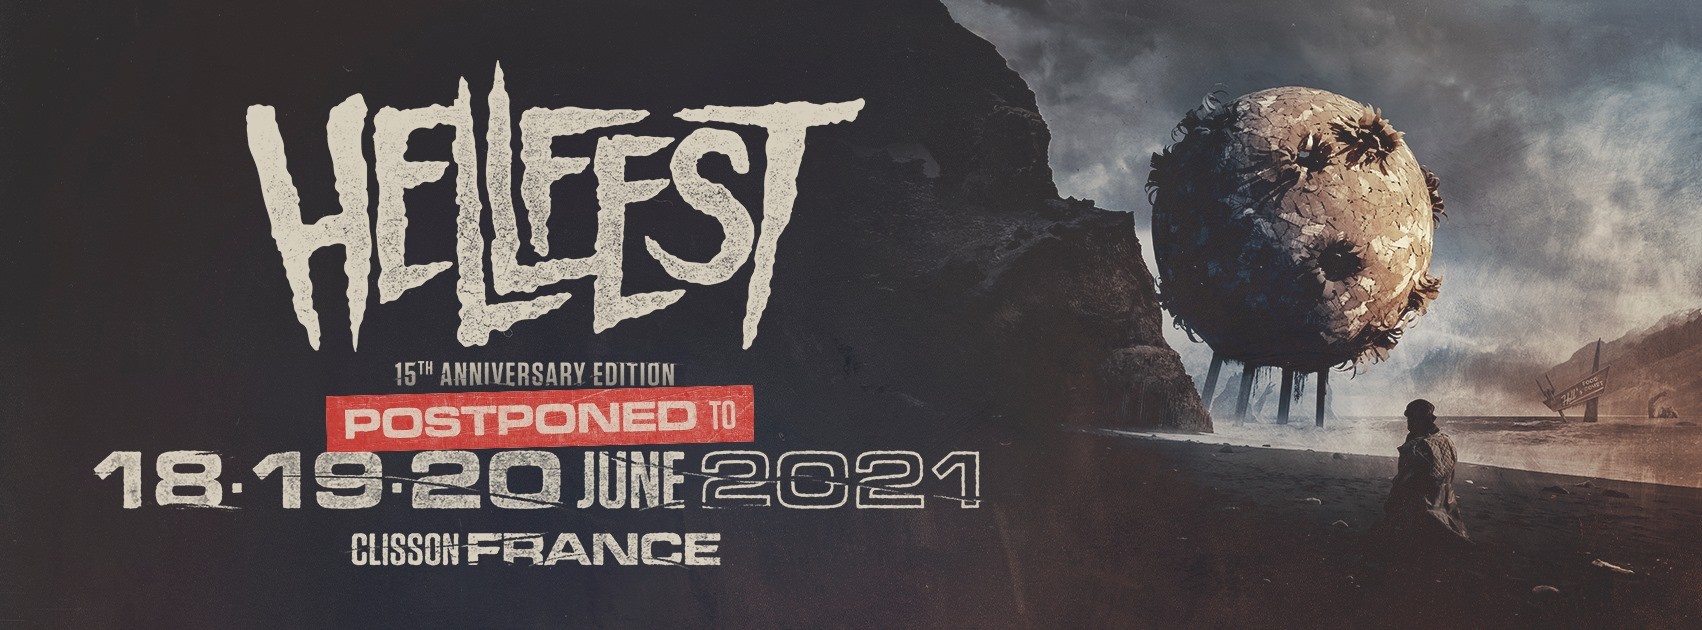 Francúzsky Hellfest má problémy s poisťovňou a pre rok 2020 je zrušený